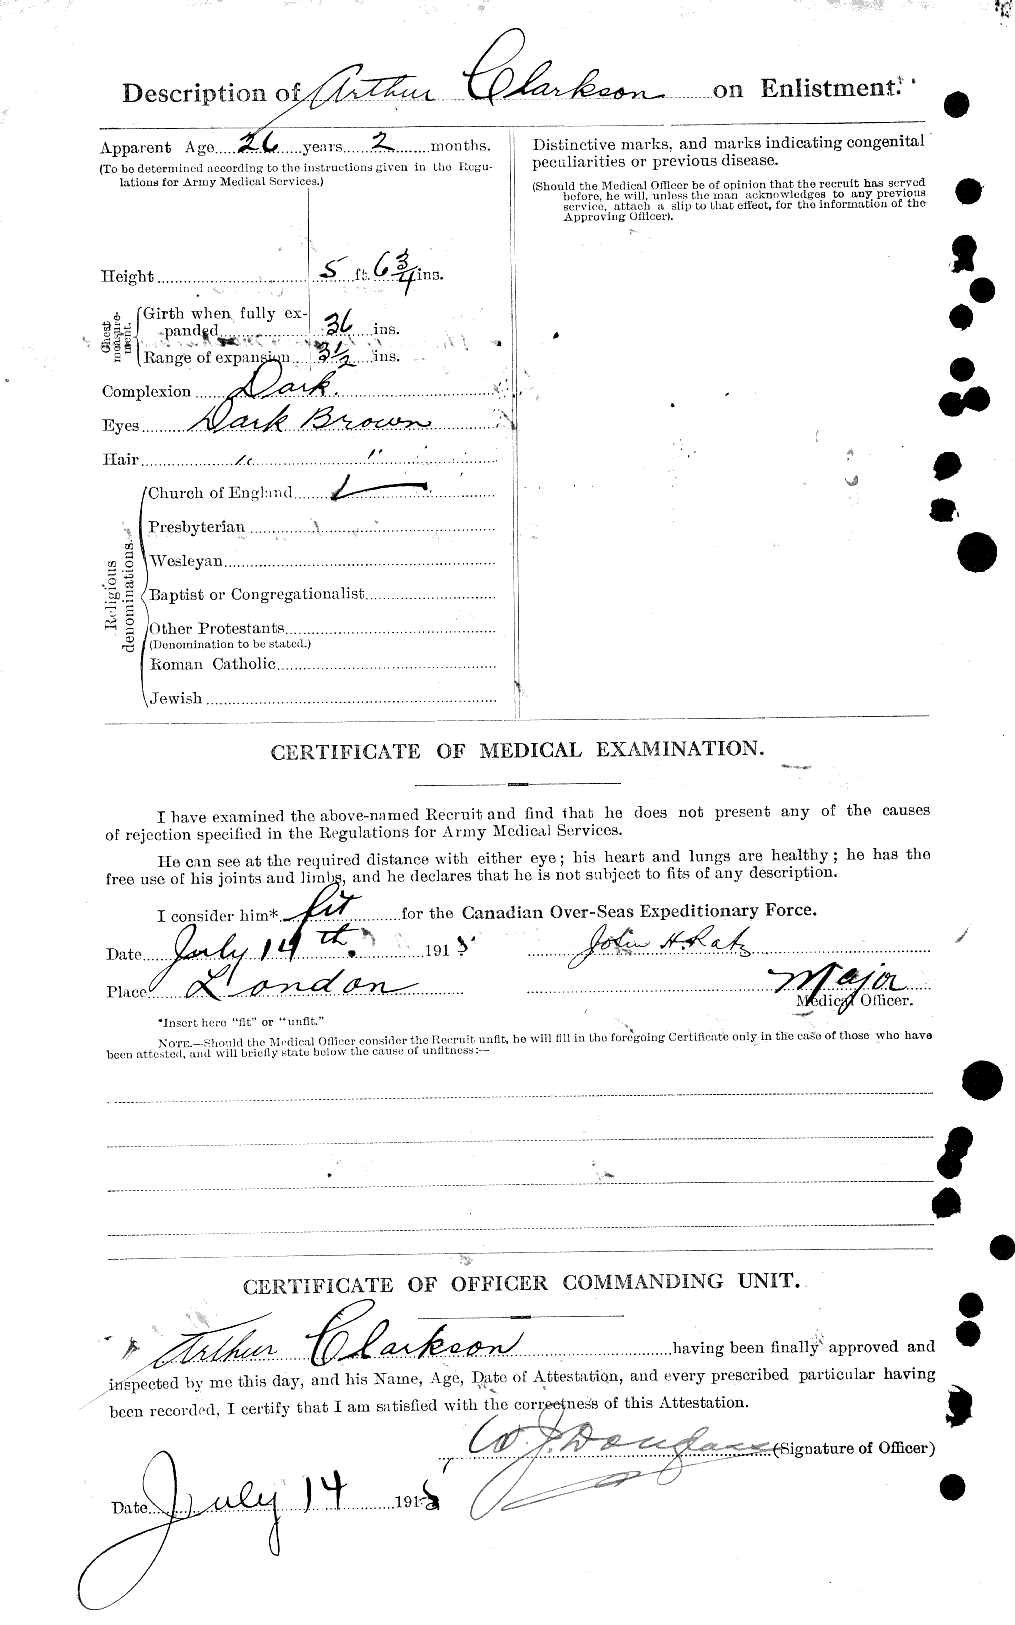 Dossiers du Personnel de la Première Guerre mondiale - CEC 023615b